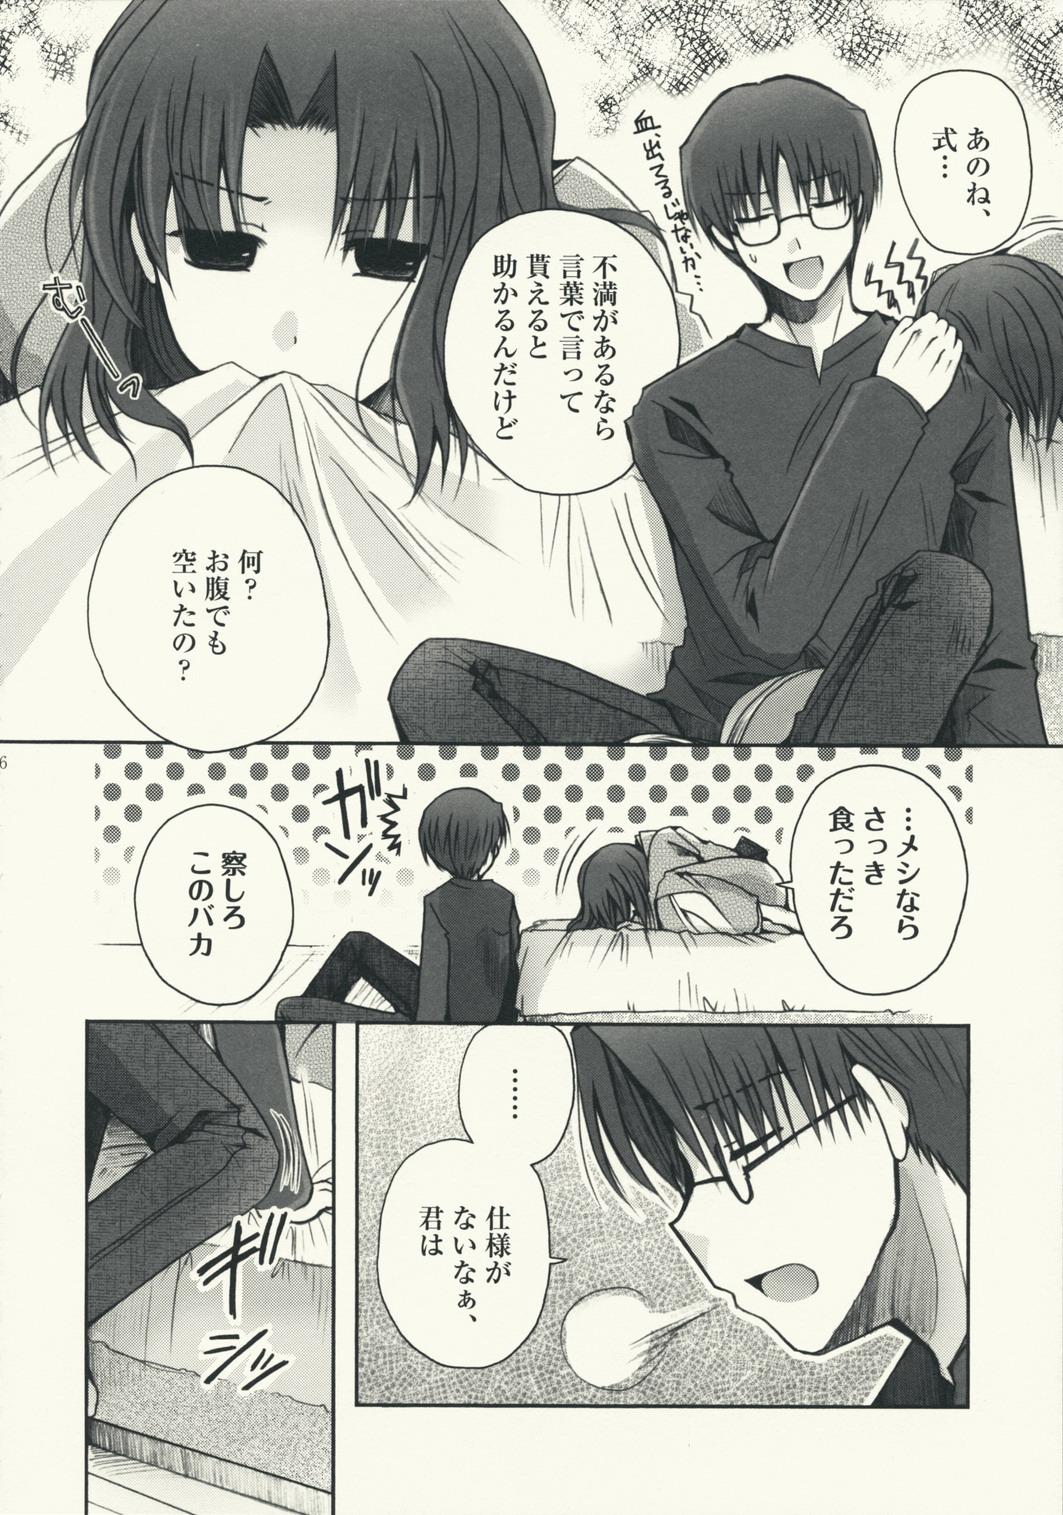 Family Sex Mitsuyume - Kara no kyoukai Uniform - Page 6